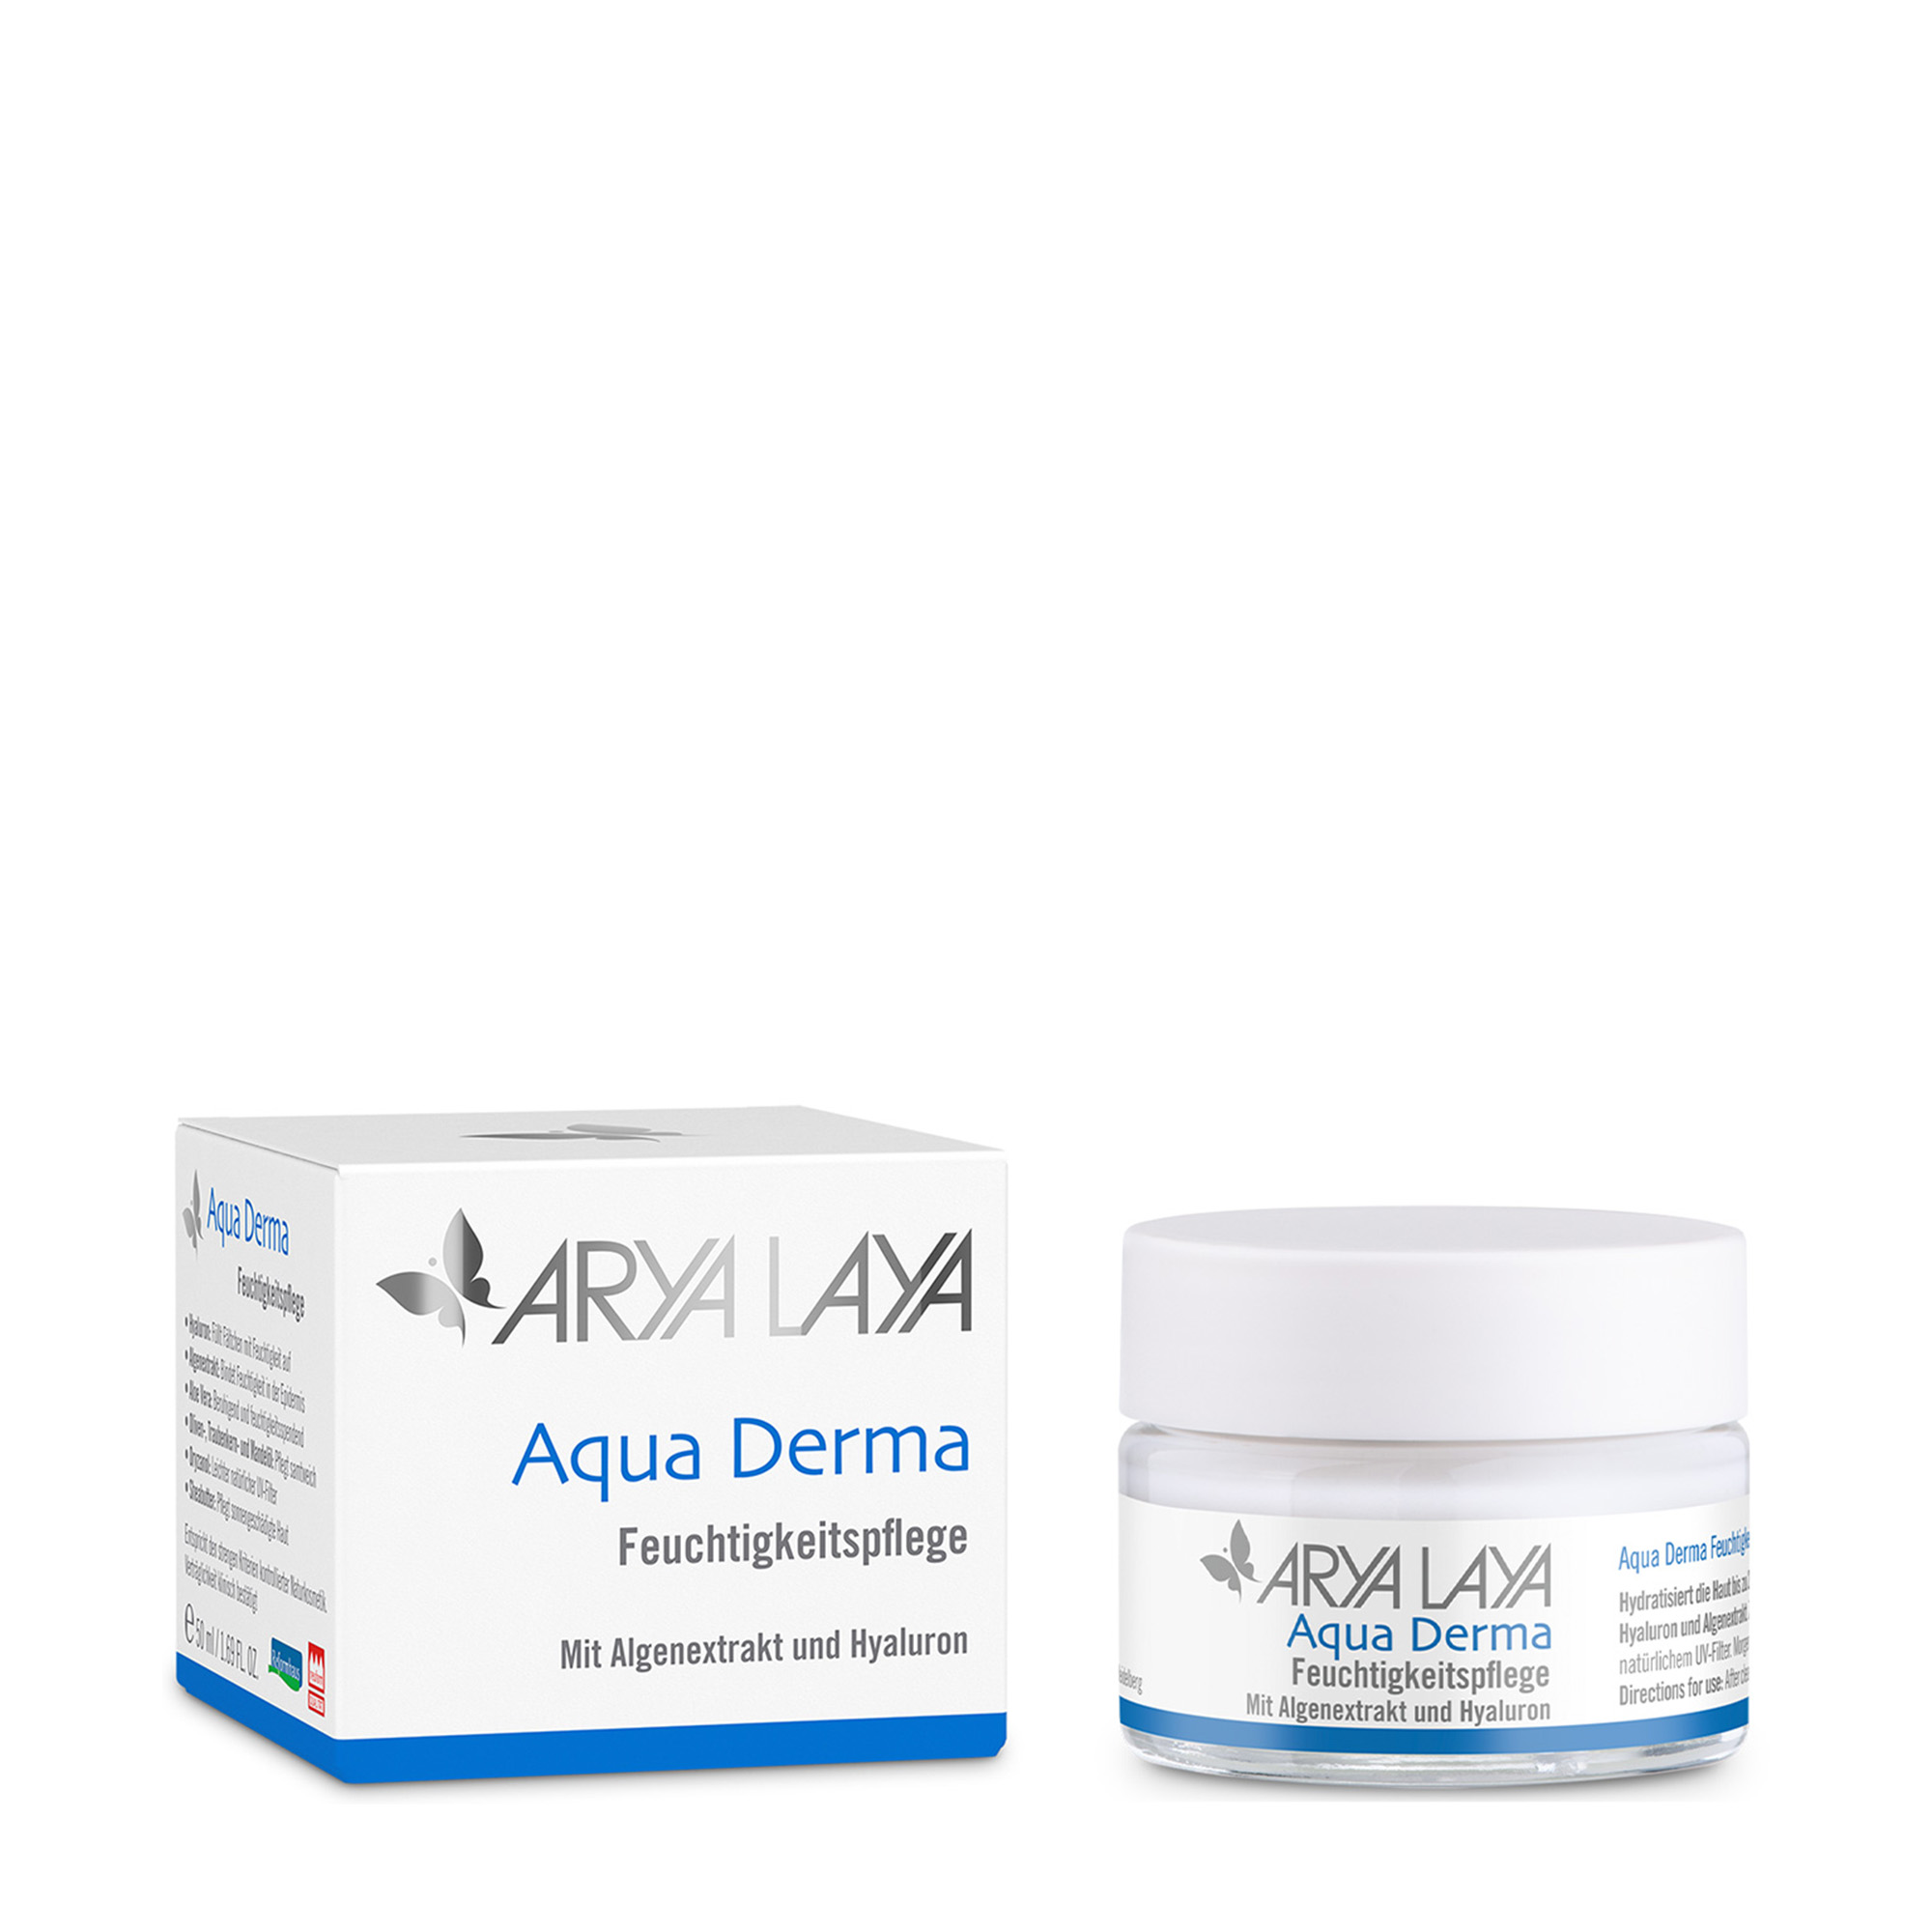 Glastiegel und Faltschachtel mit ARYA LAYA Aqua Derma Feuchtigkeitspflege, 50 ml